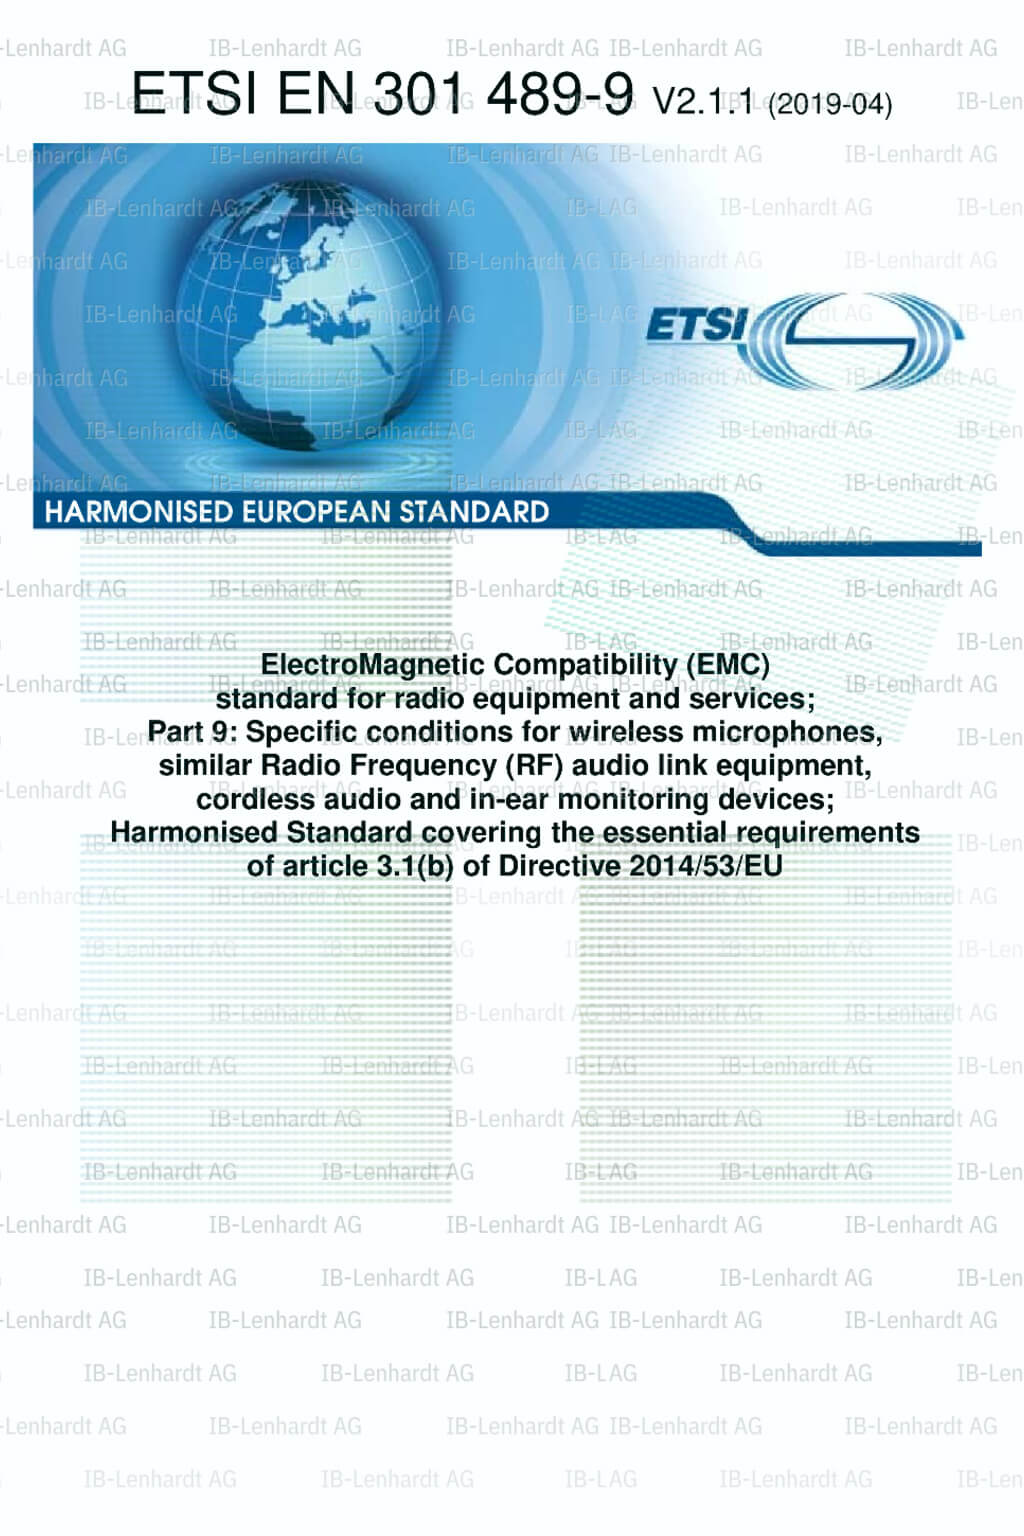 ETSI EN 301 489-09 V2.1.1